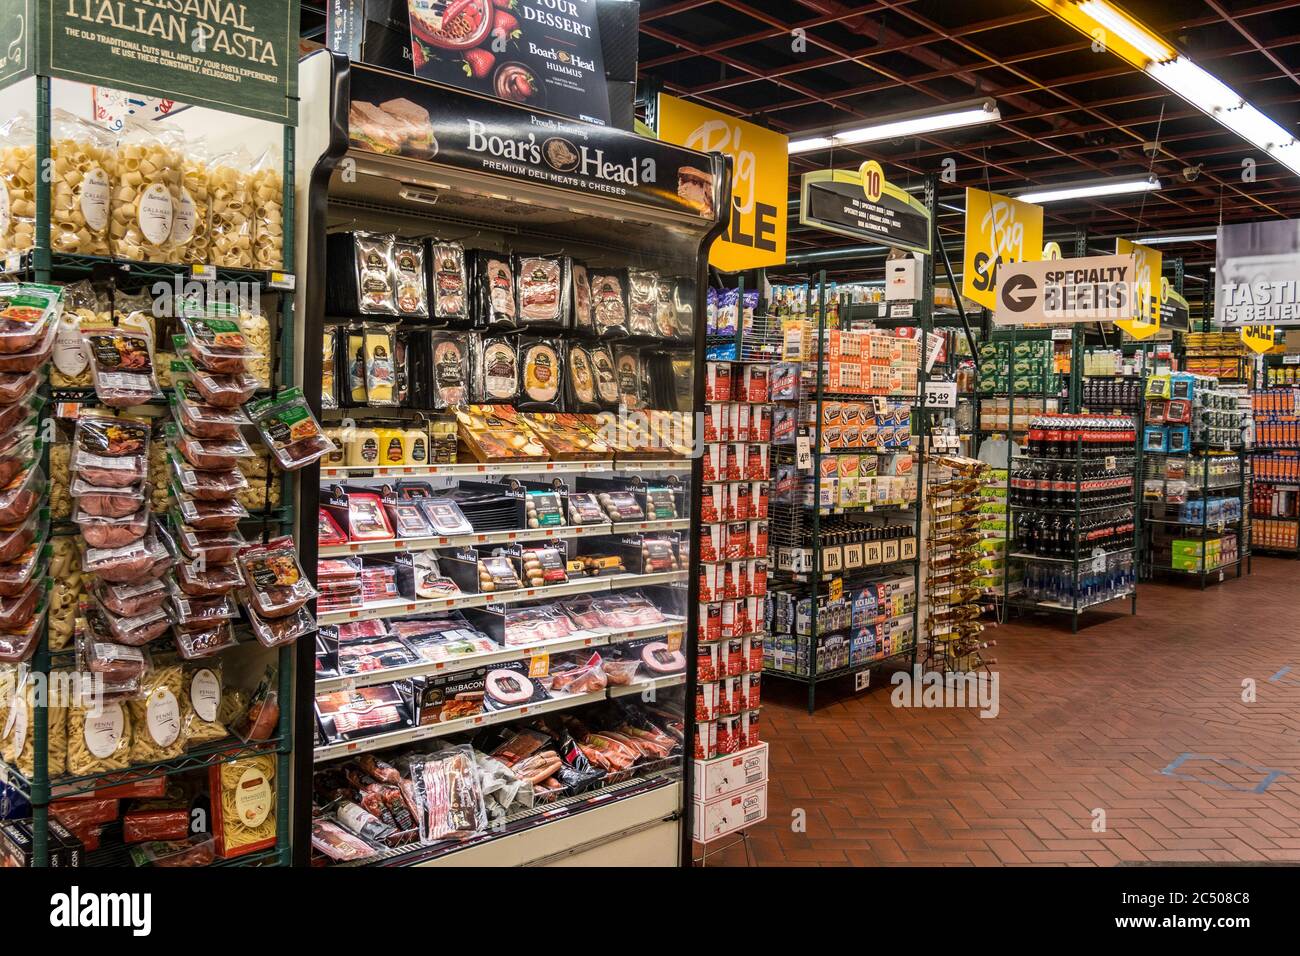 Fairway Super mercato, New York City, Stati Uniti d'America Foto Stock